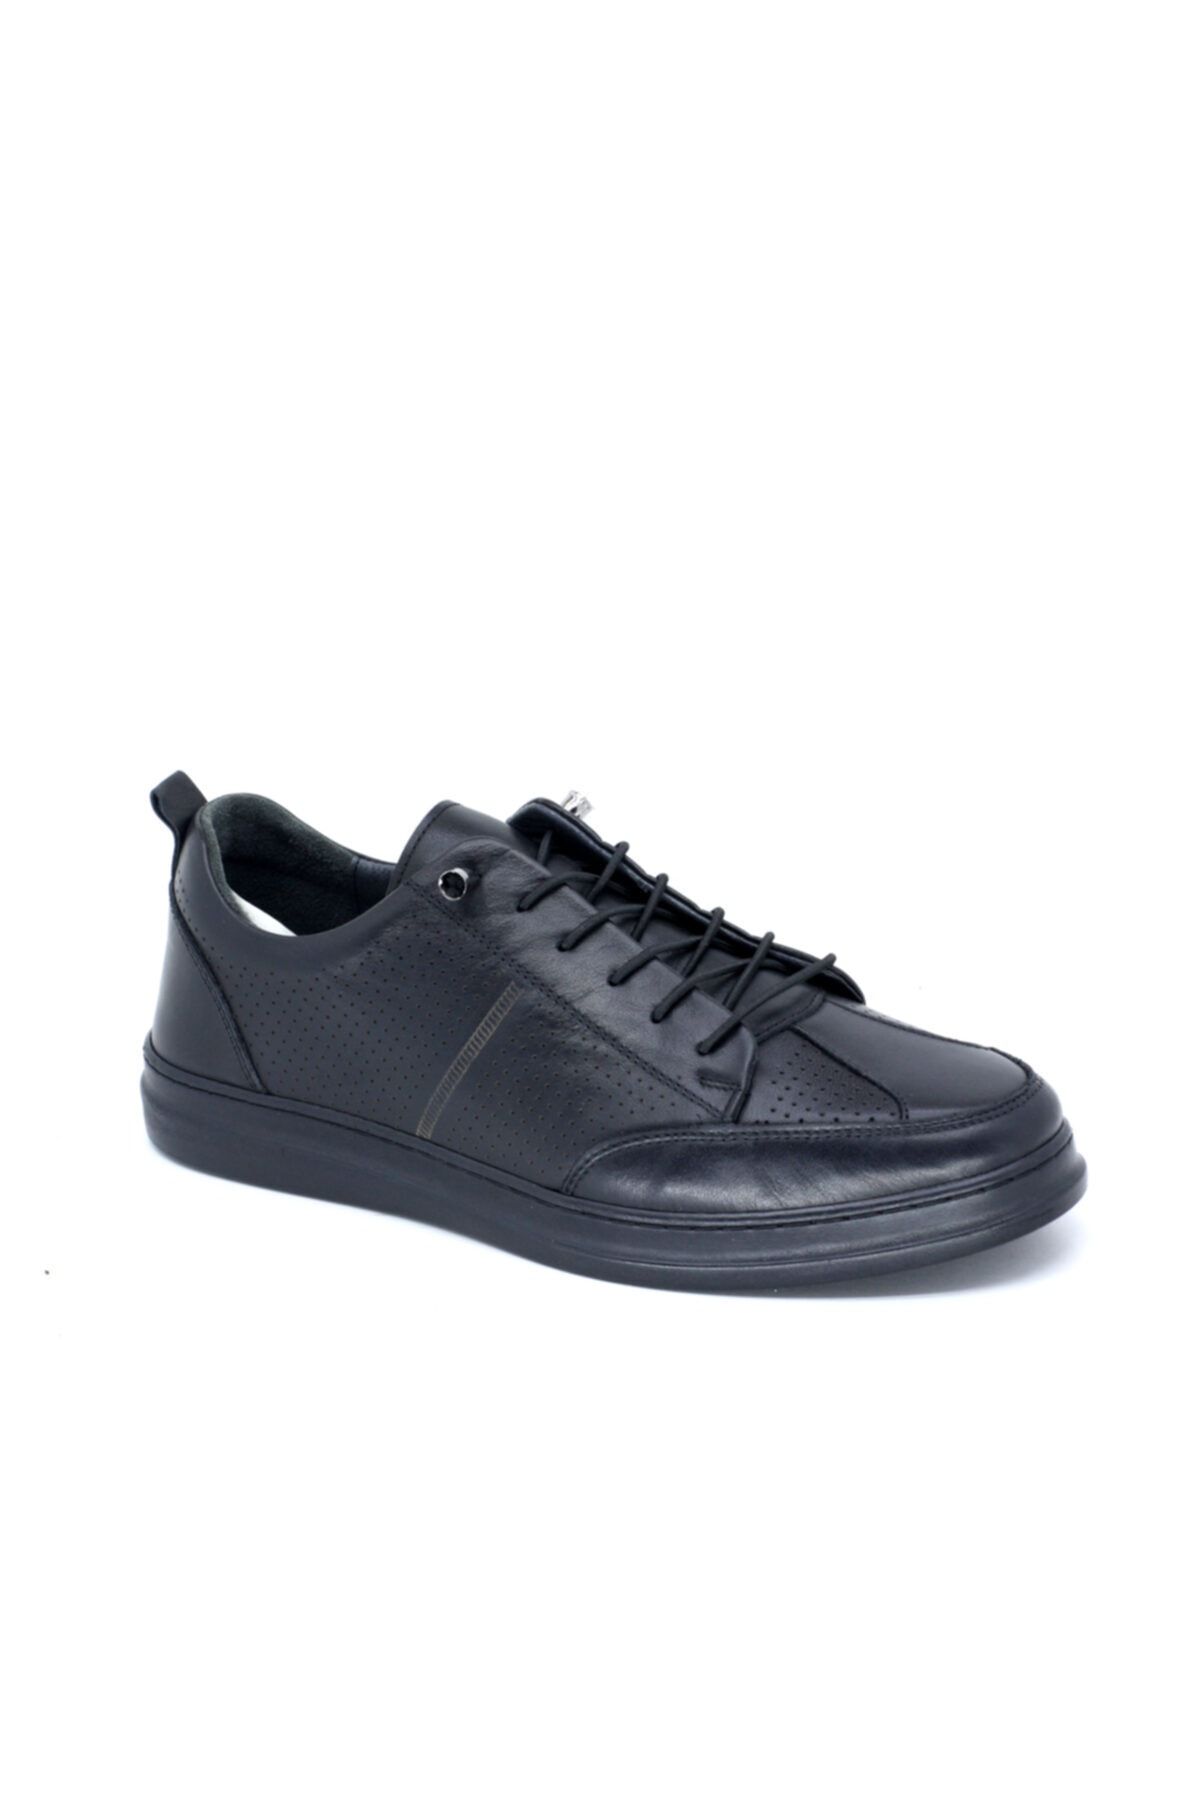 TRENDYSHOES Trendyshose 407 Hakiki Deri Rahat Taban Erkek Günlük Ayakkabı